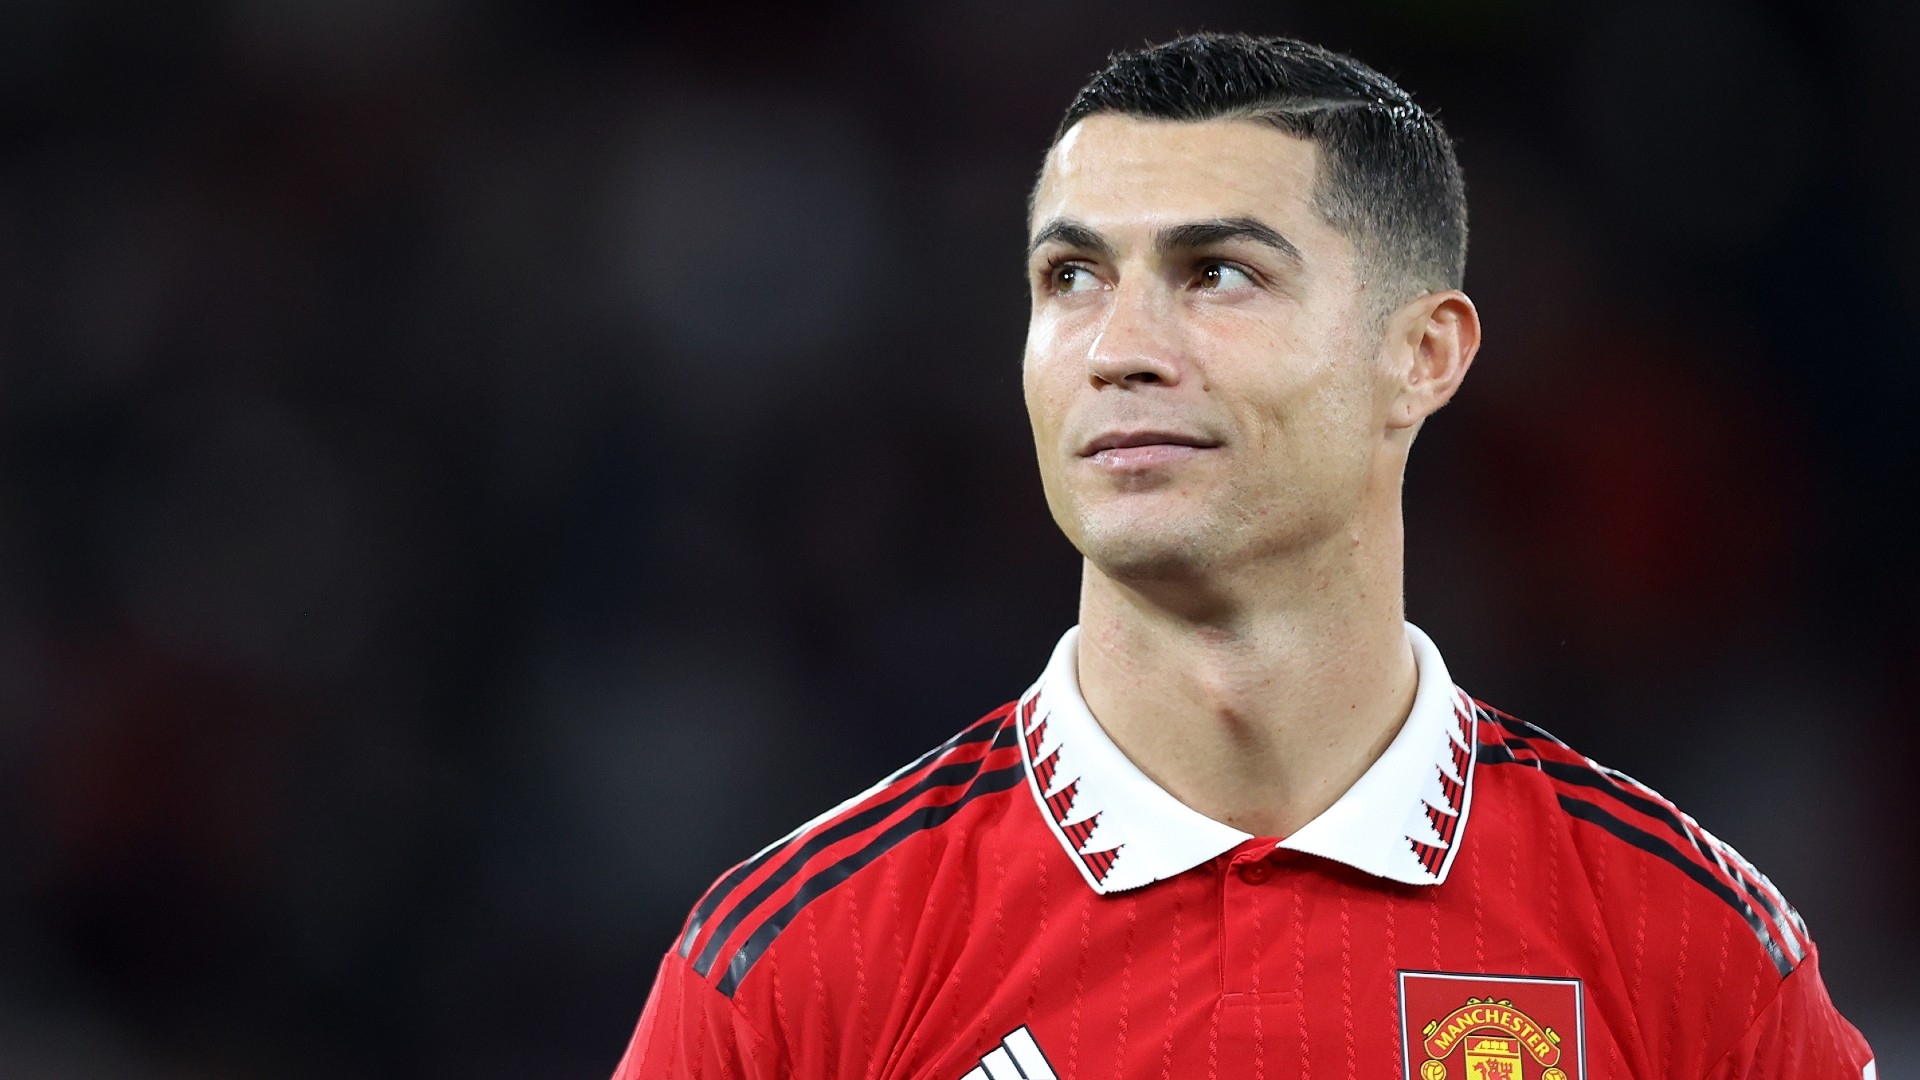 Dipecat Manchester United, Cristiano Ronaldo Segera Terima Tawaran Klub Arab Saudi - Bakal Jadi 'Wajah' Piala Dunia 2030! | Goal.com Indonesia